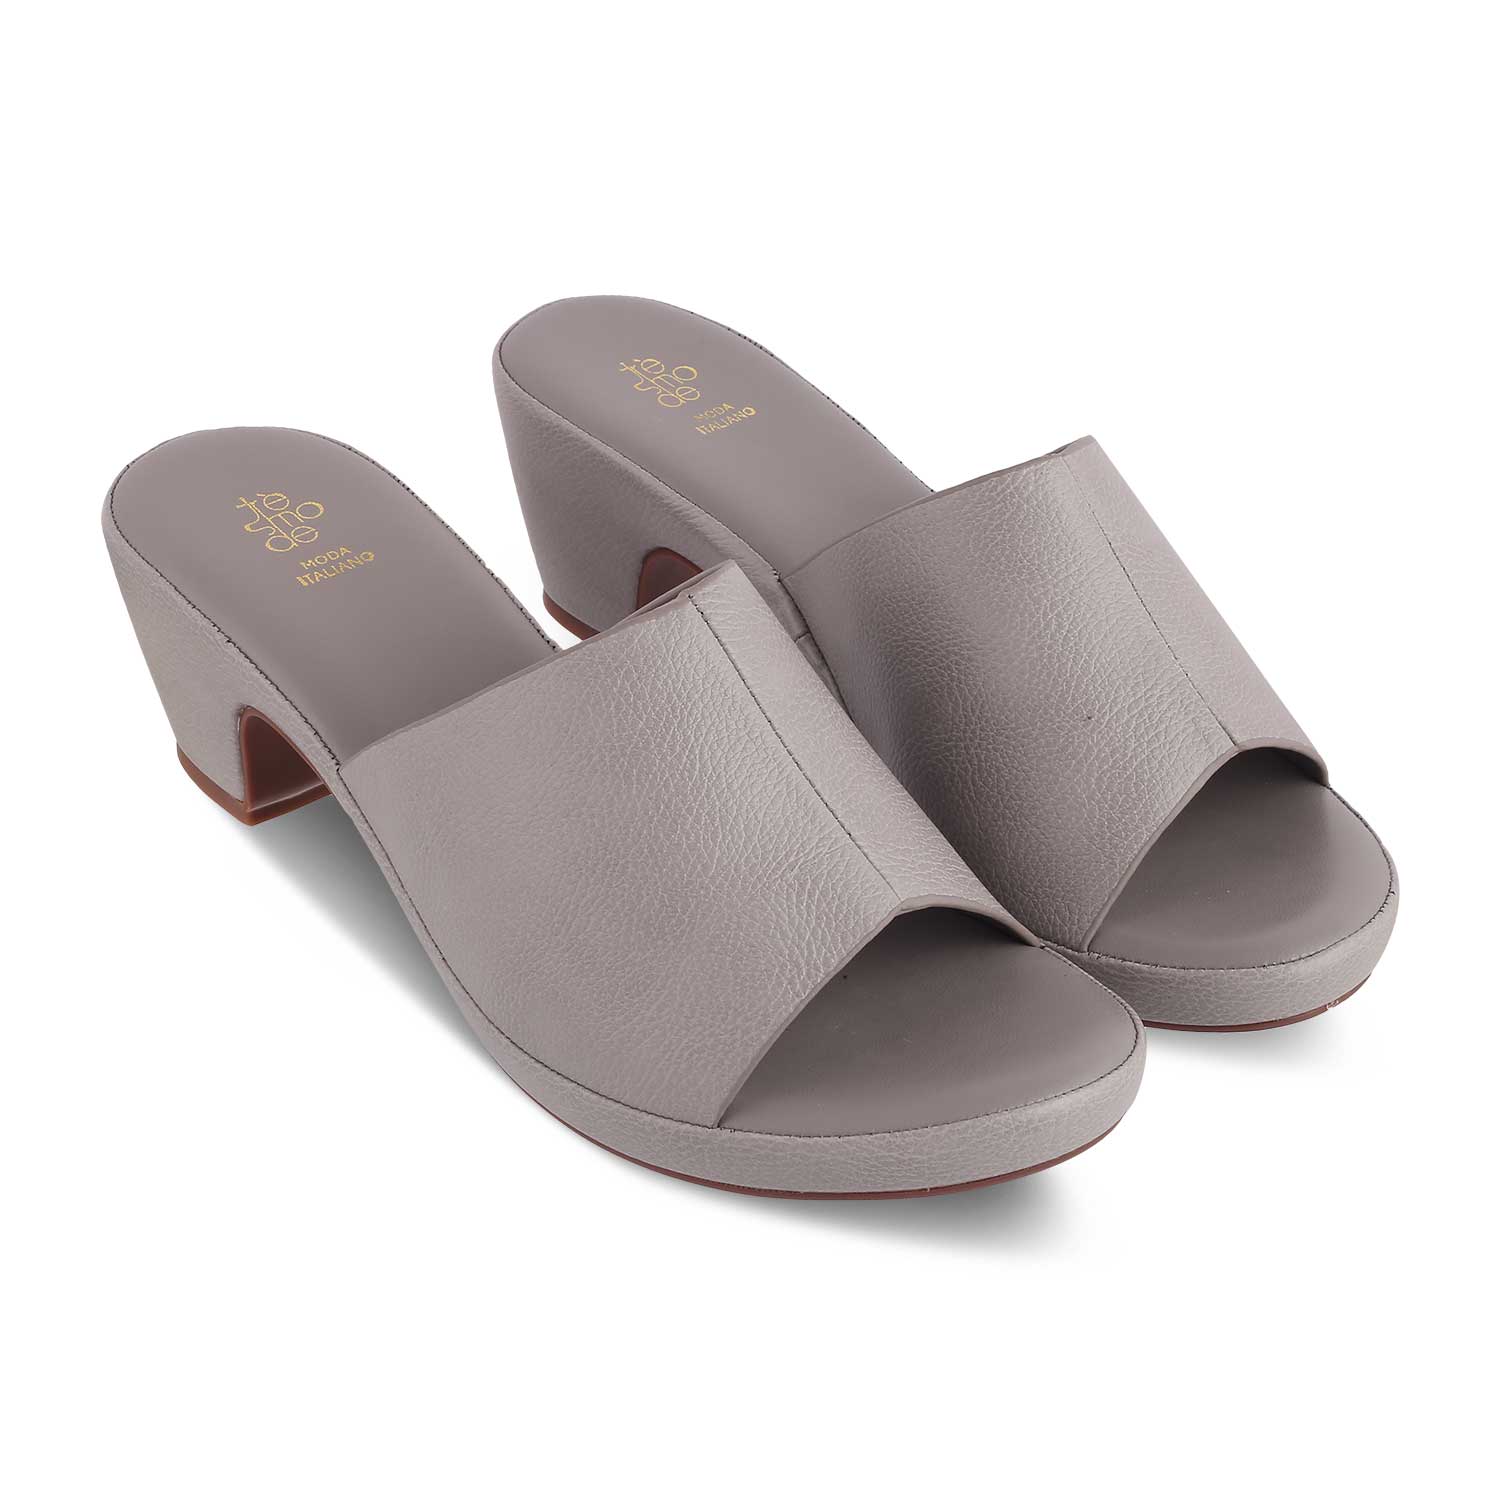 The Brixyed Grey Women's Casual Block Heel Sandals Tresmode - Tresmode